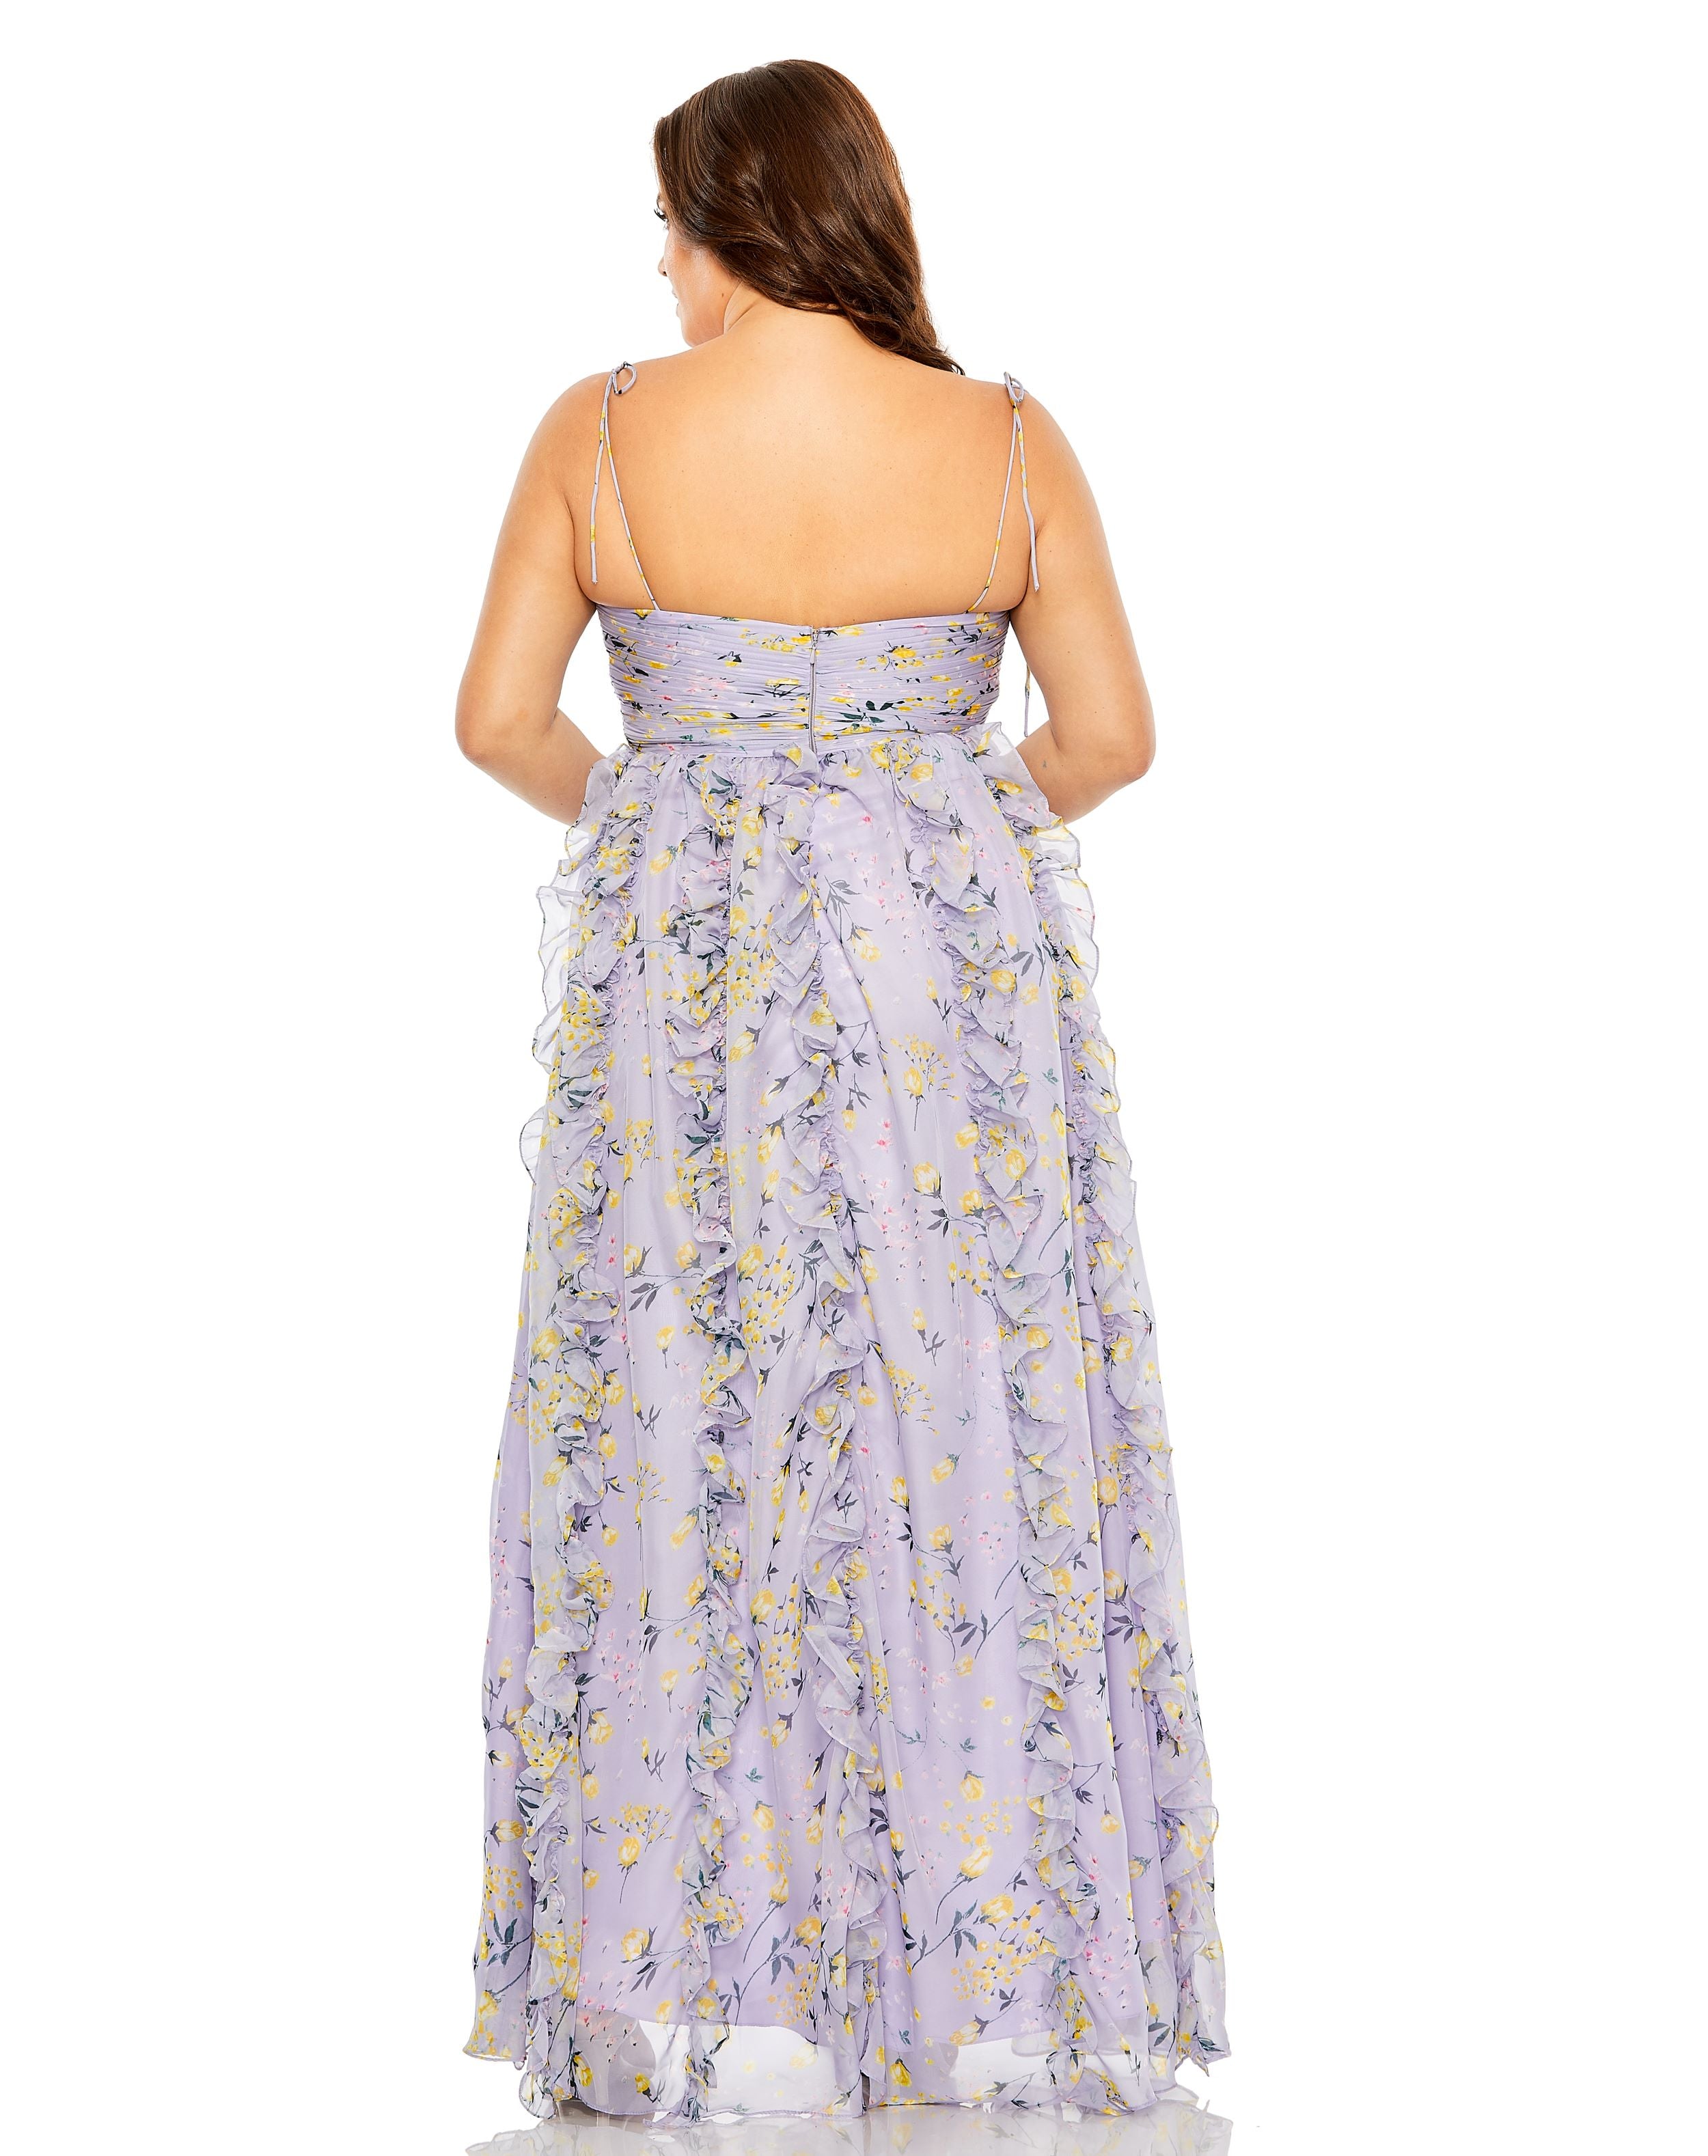 Keyhole Detail Floral Chiffon Gown | Sample | Sz. 12W